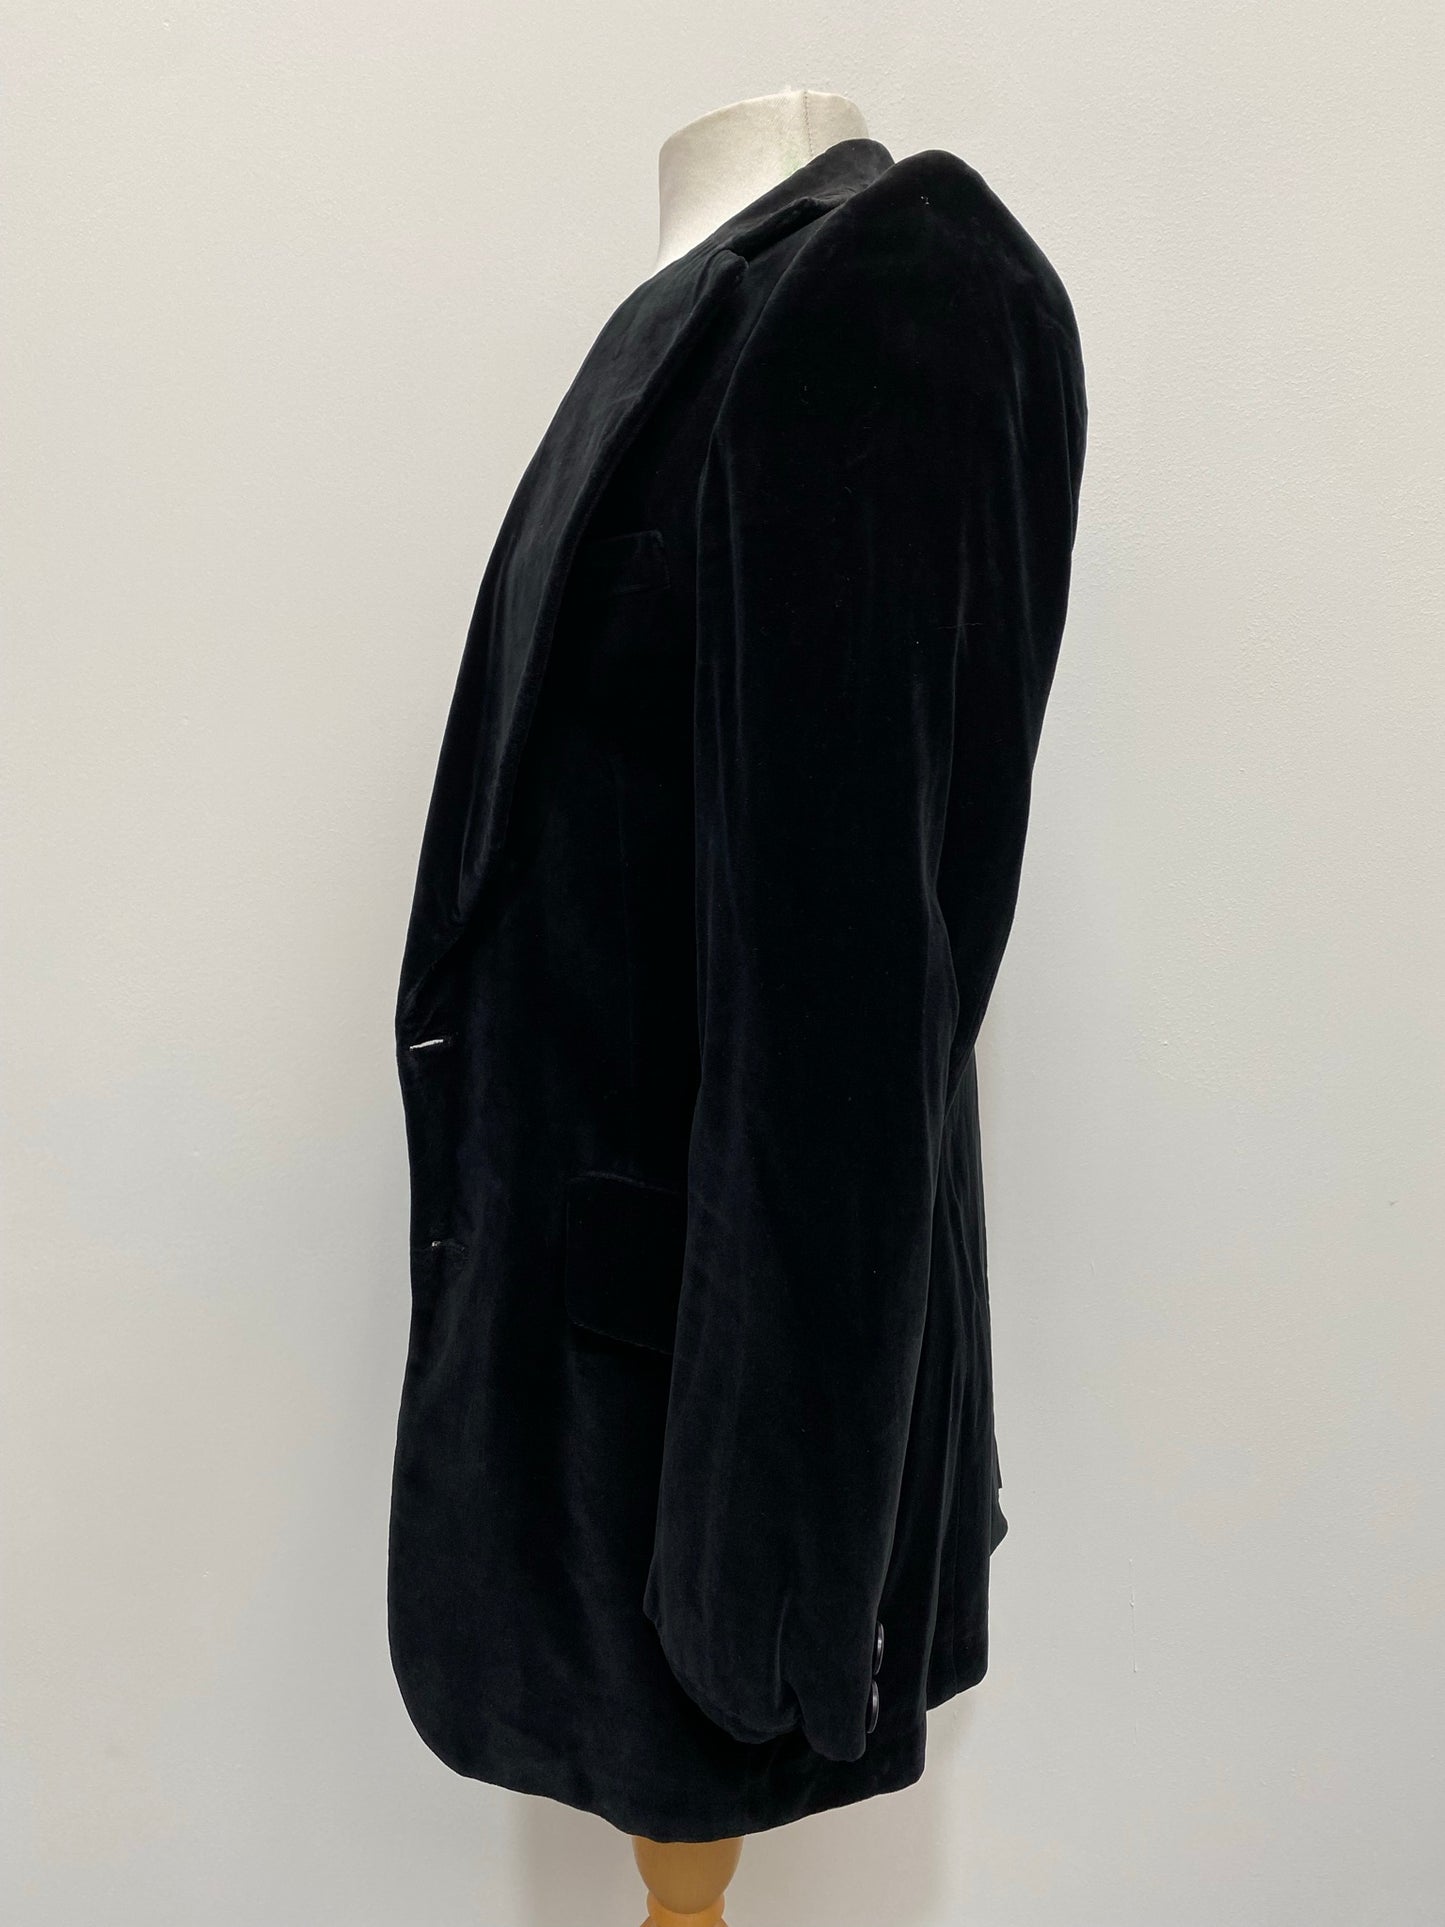 1970s Black Velvet Suit Size Men's Medium / Women's UK 16 - Vintage Clothing